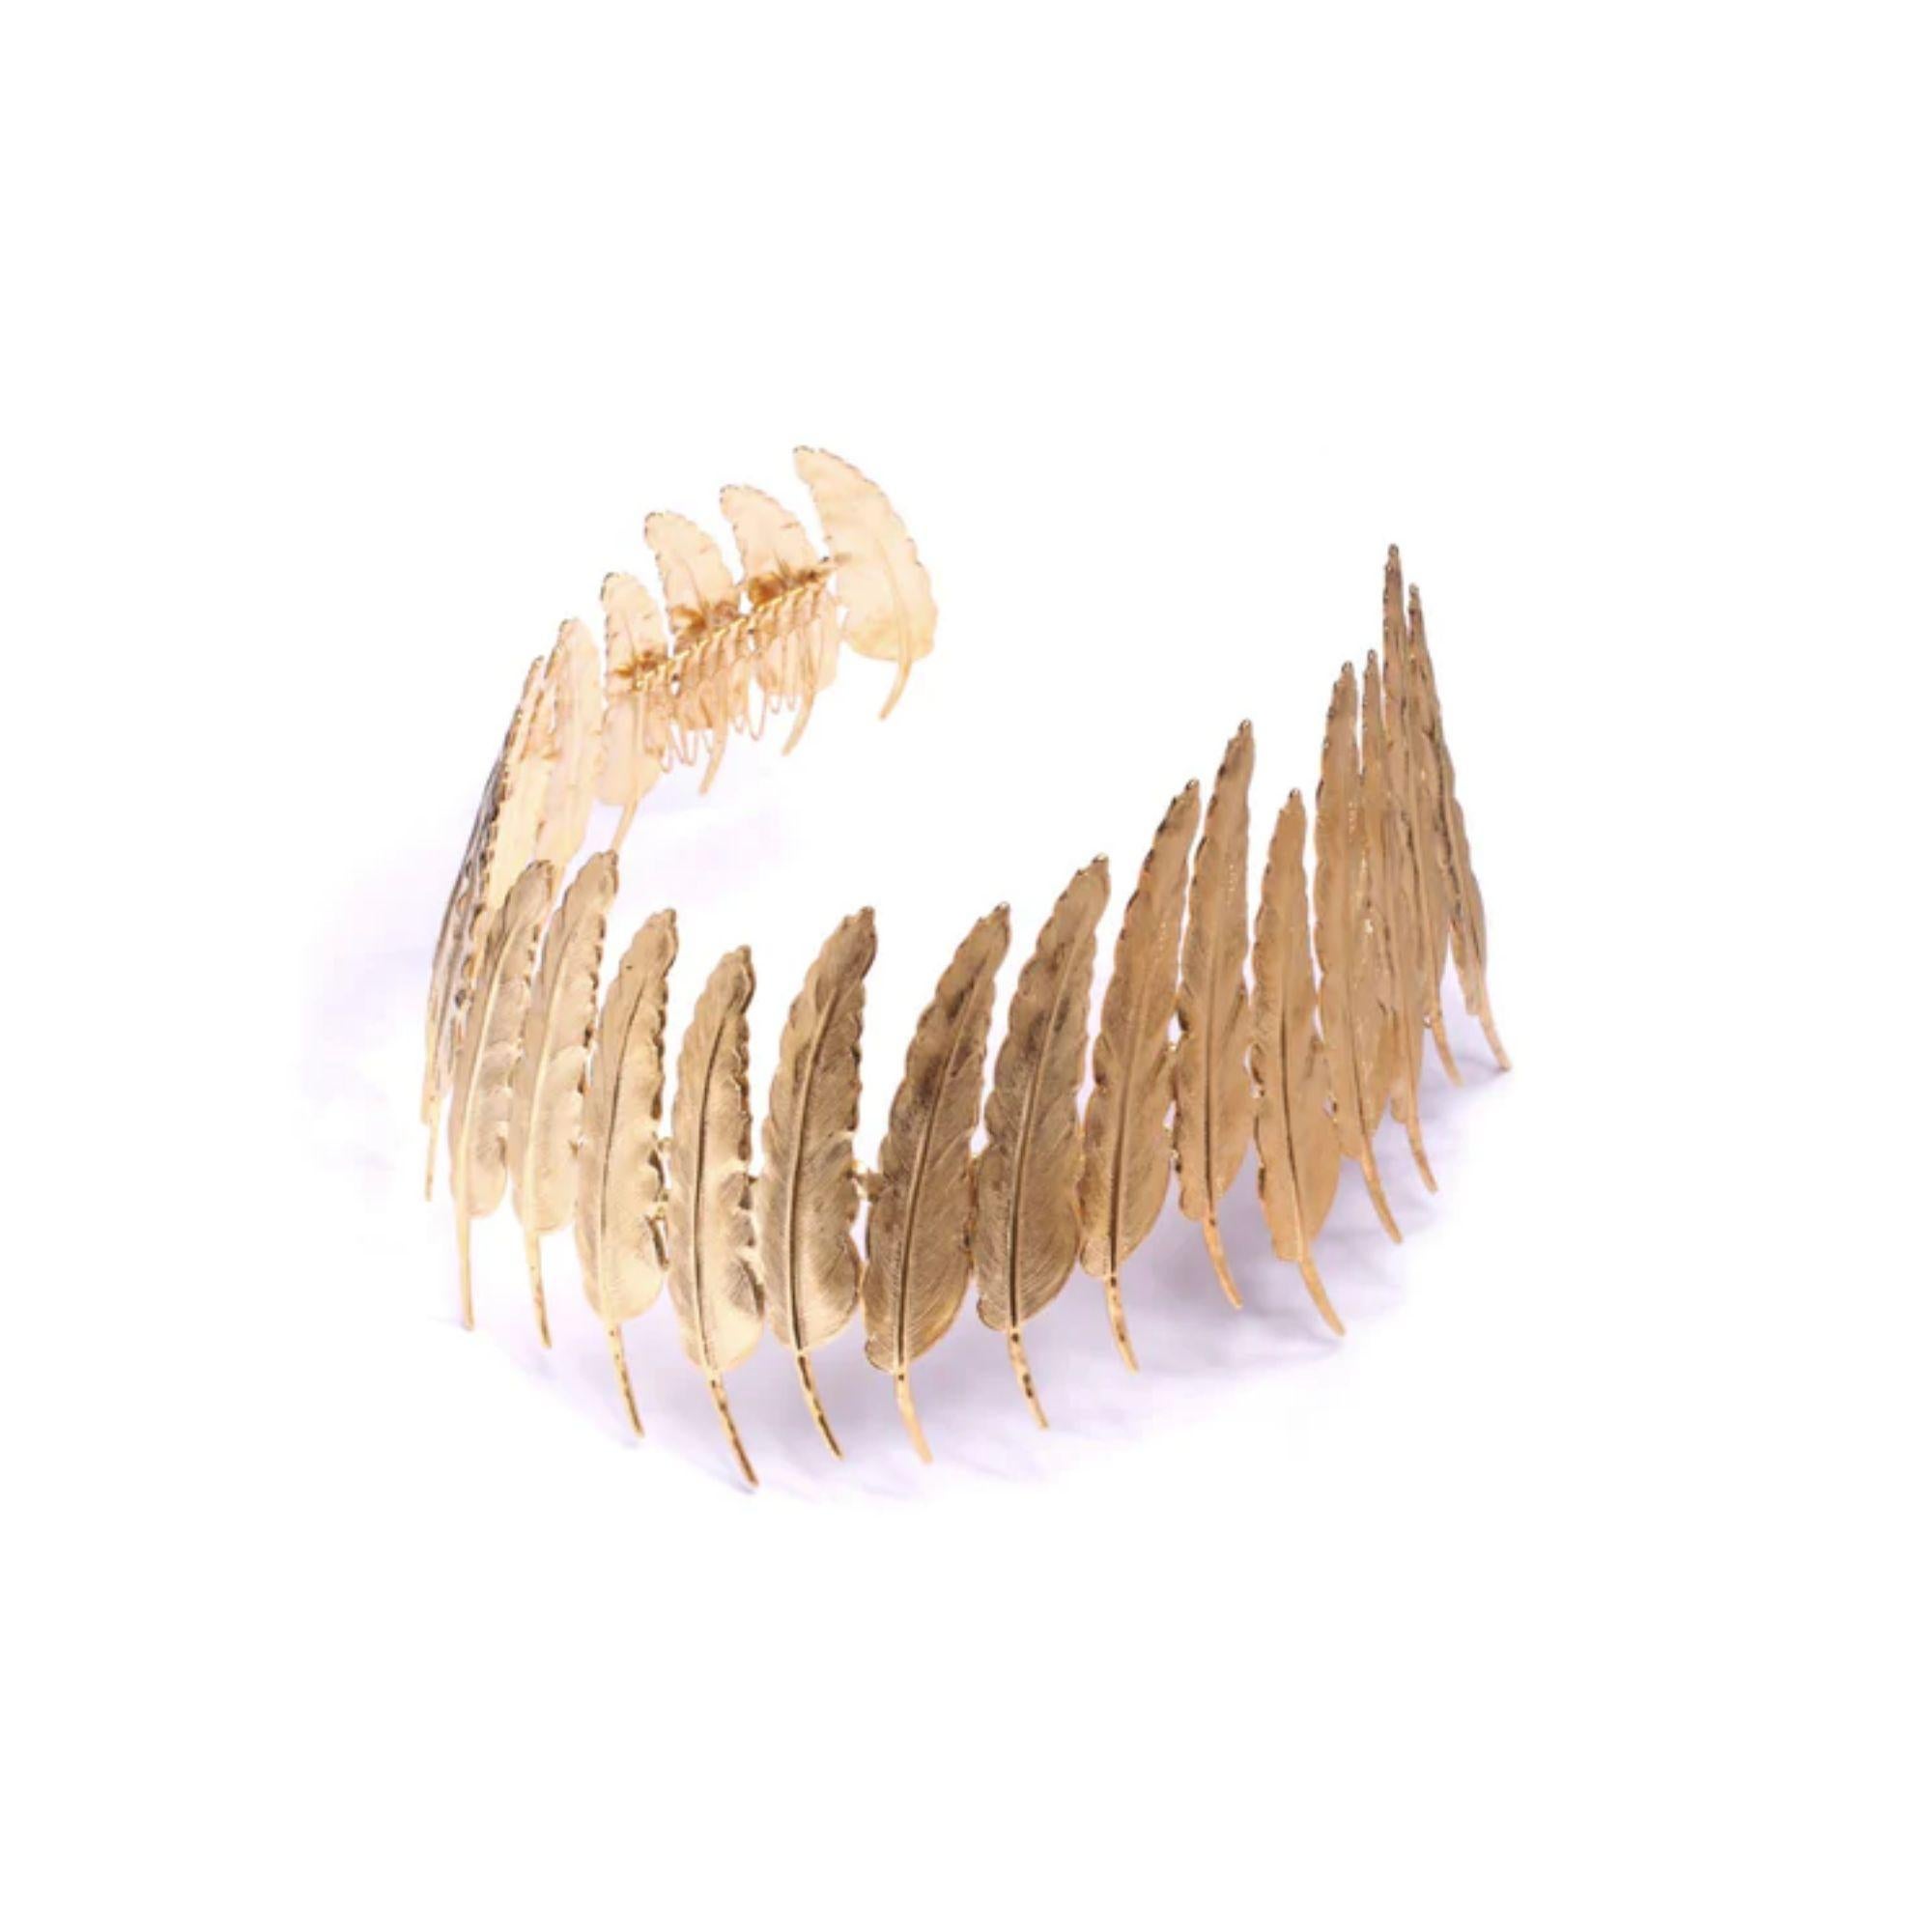 Einzigartige Krone, die mit versteckten Kämmen getragen wird, um den Kopfschmuck zu befestigen. Dieses komplizierte Stück ist komplett handgefertigt, wobei jede Feder von Hand an die nächste gelötet und dann mit 24-karätigem Gold überzogen wird.